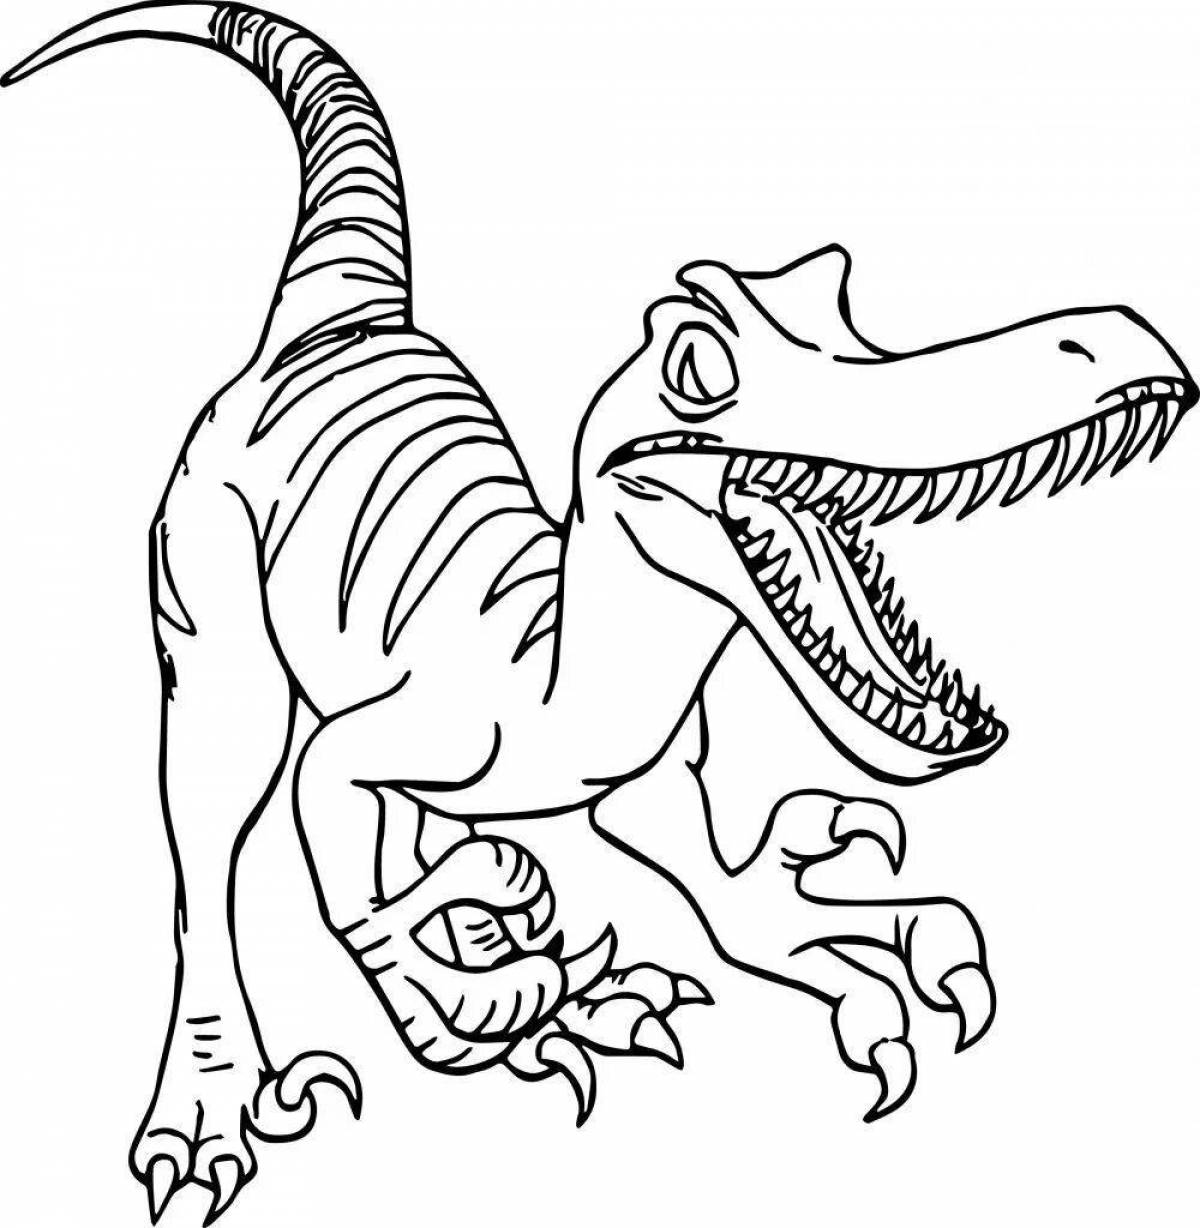 Причудливая раскраска с изображением динозавра